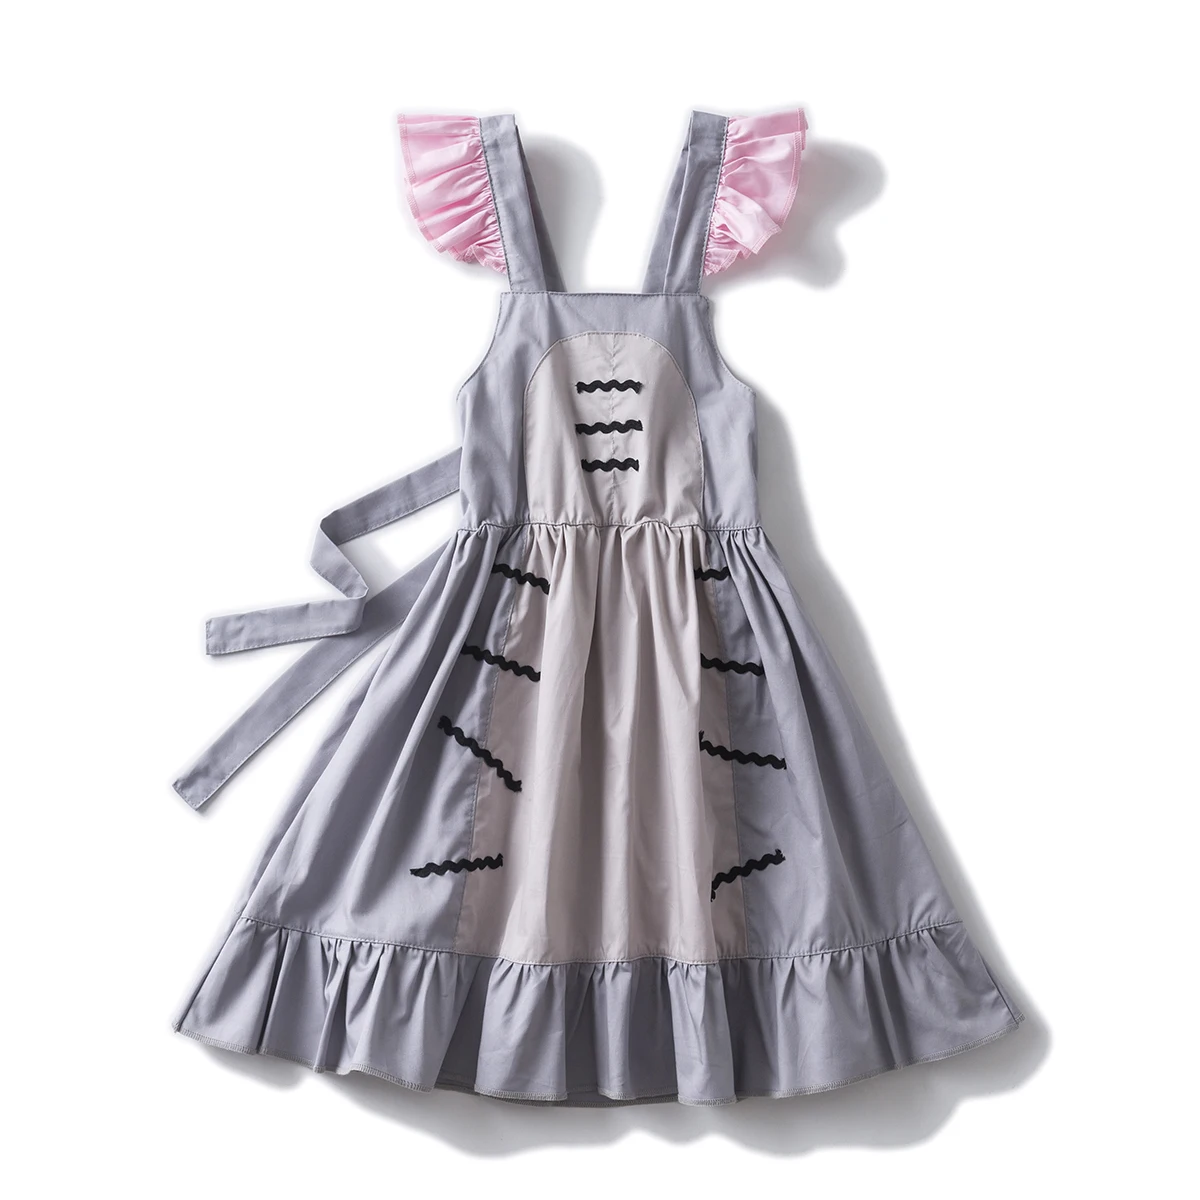 Ragazze Eeyore Twirl Dress, Eeyore Dress Eeyore costume di toddler neonate halloween cosplay birthday dresses